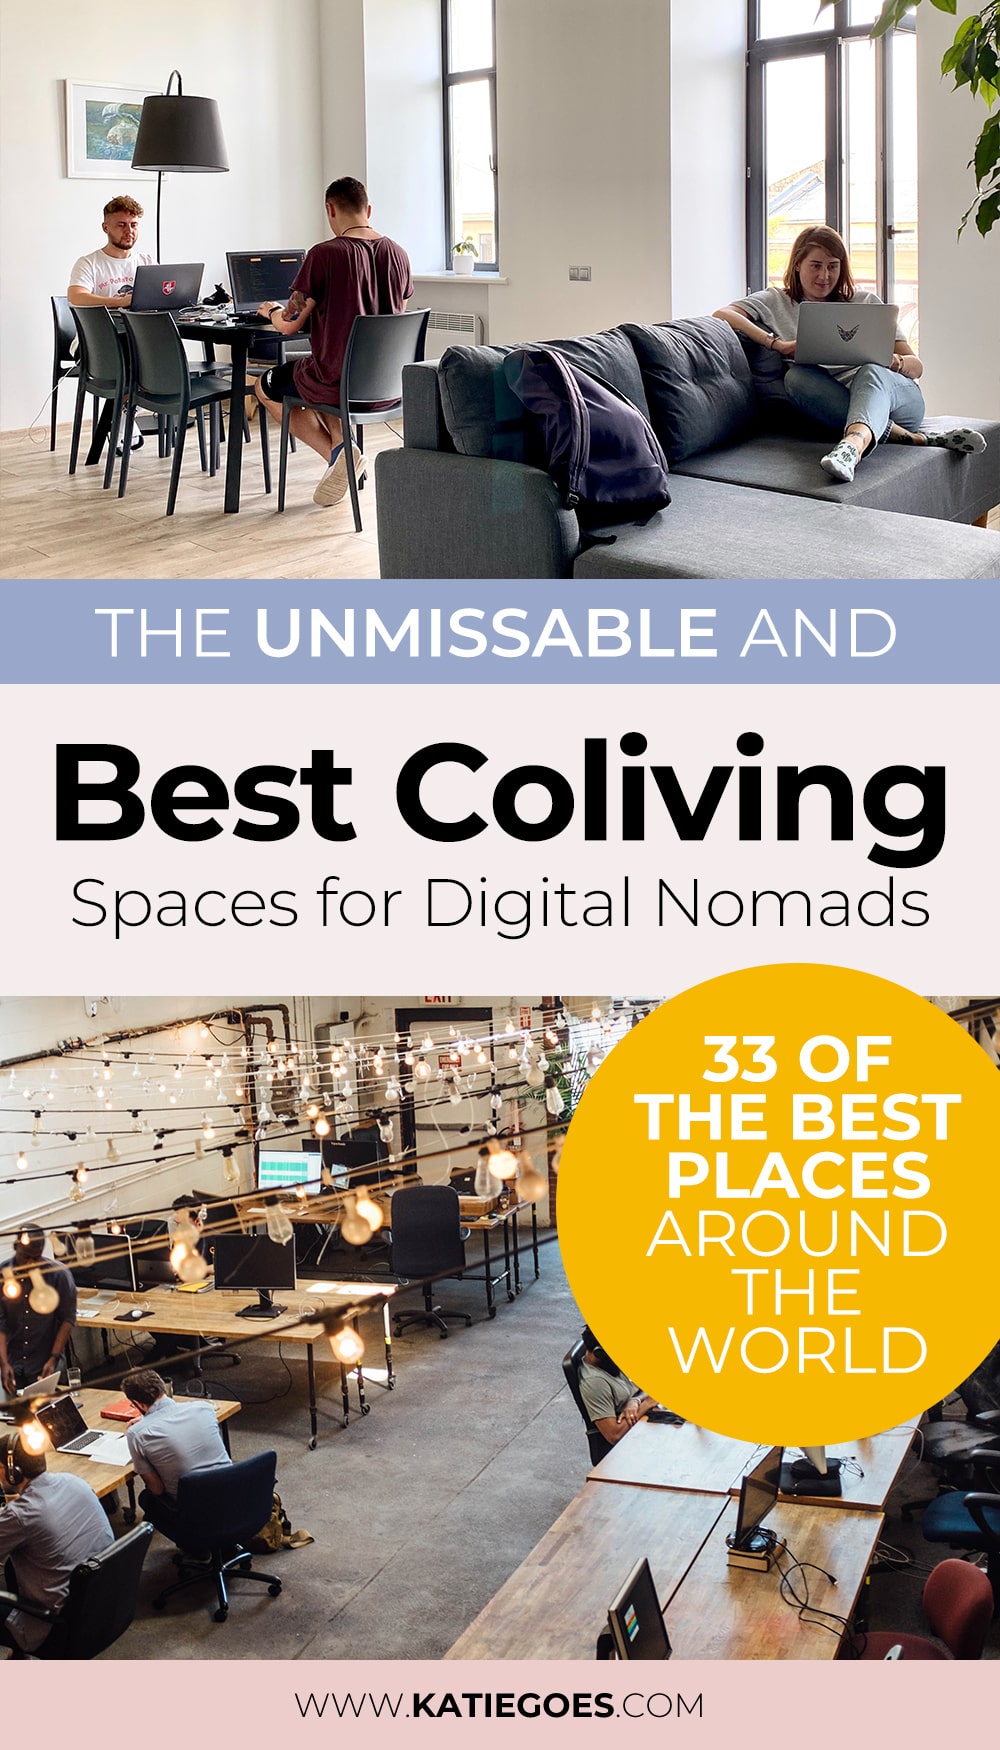 Best Coliving Spaces for Digital Nomads